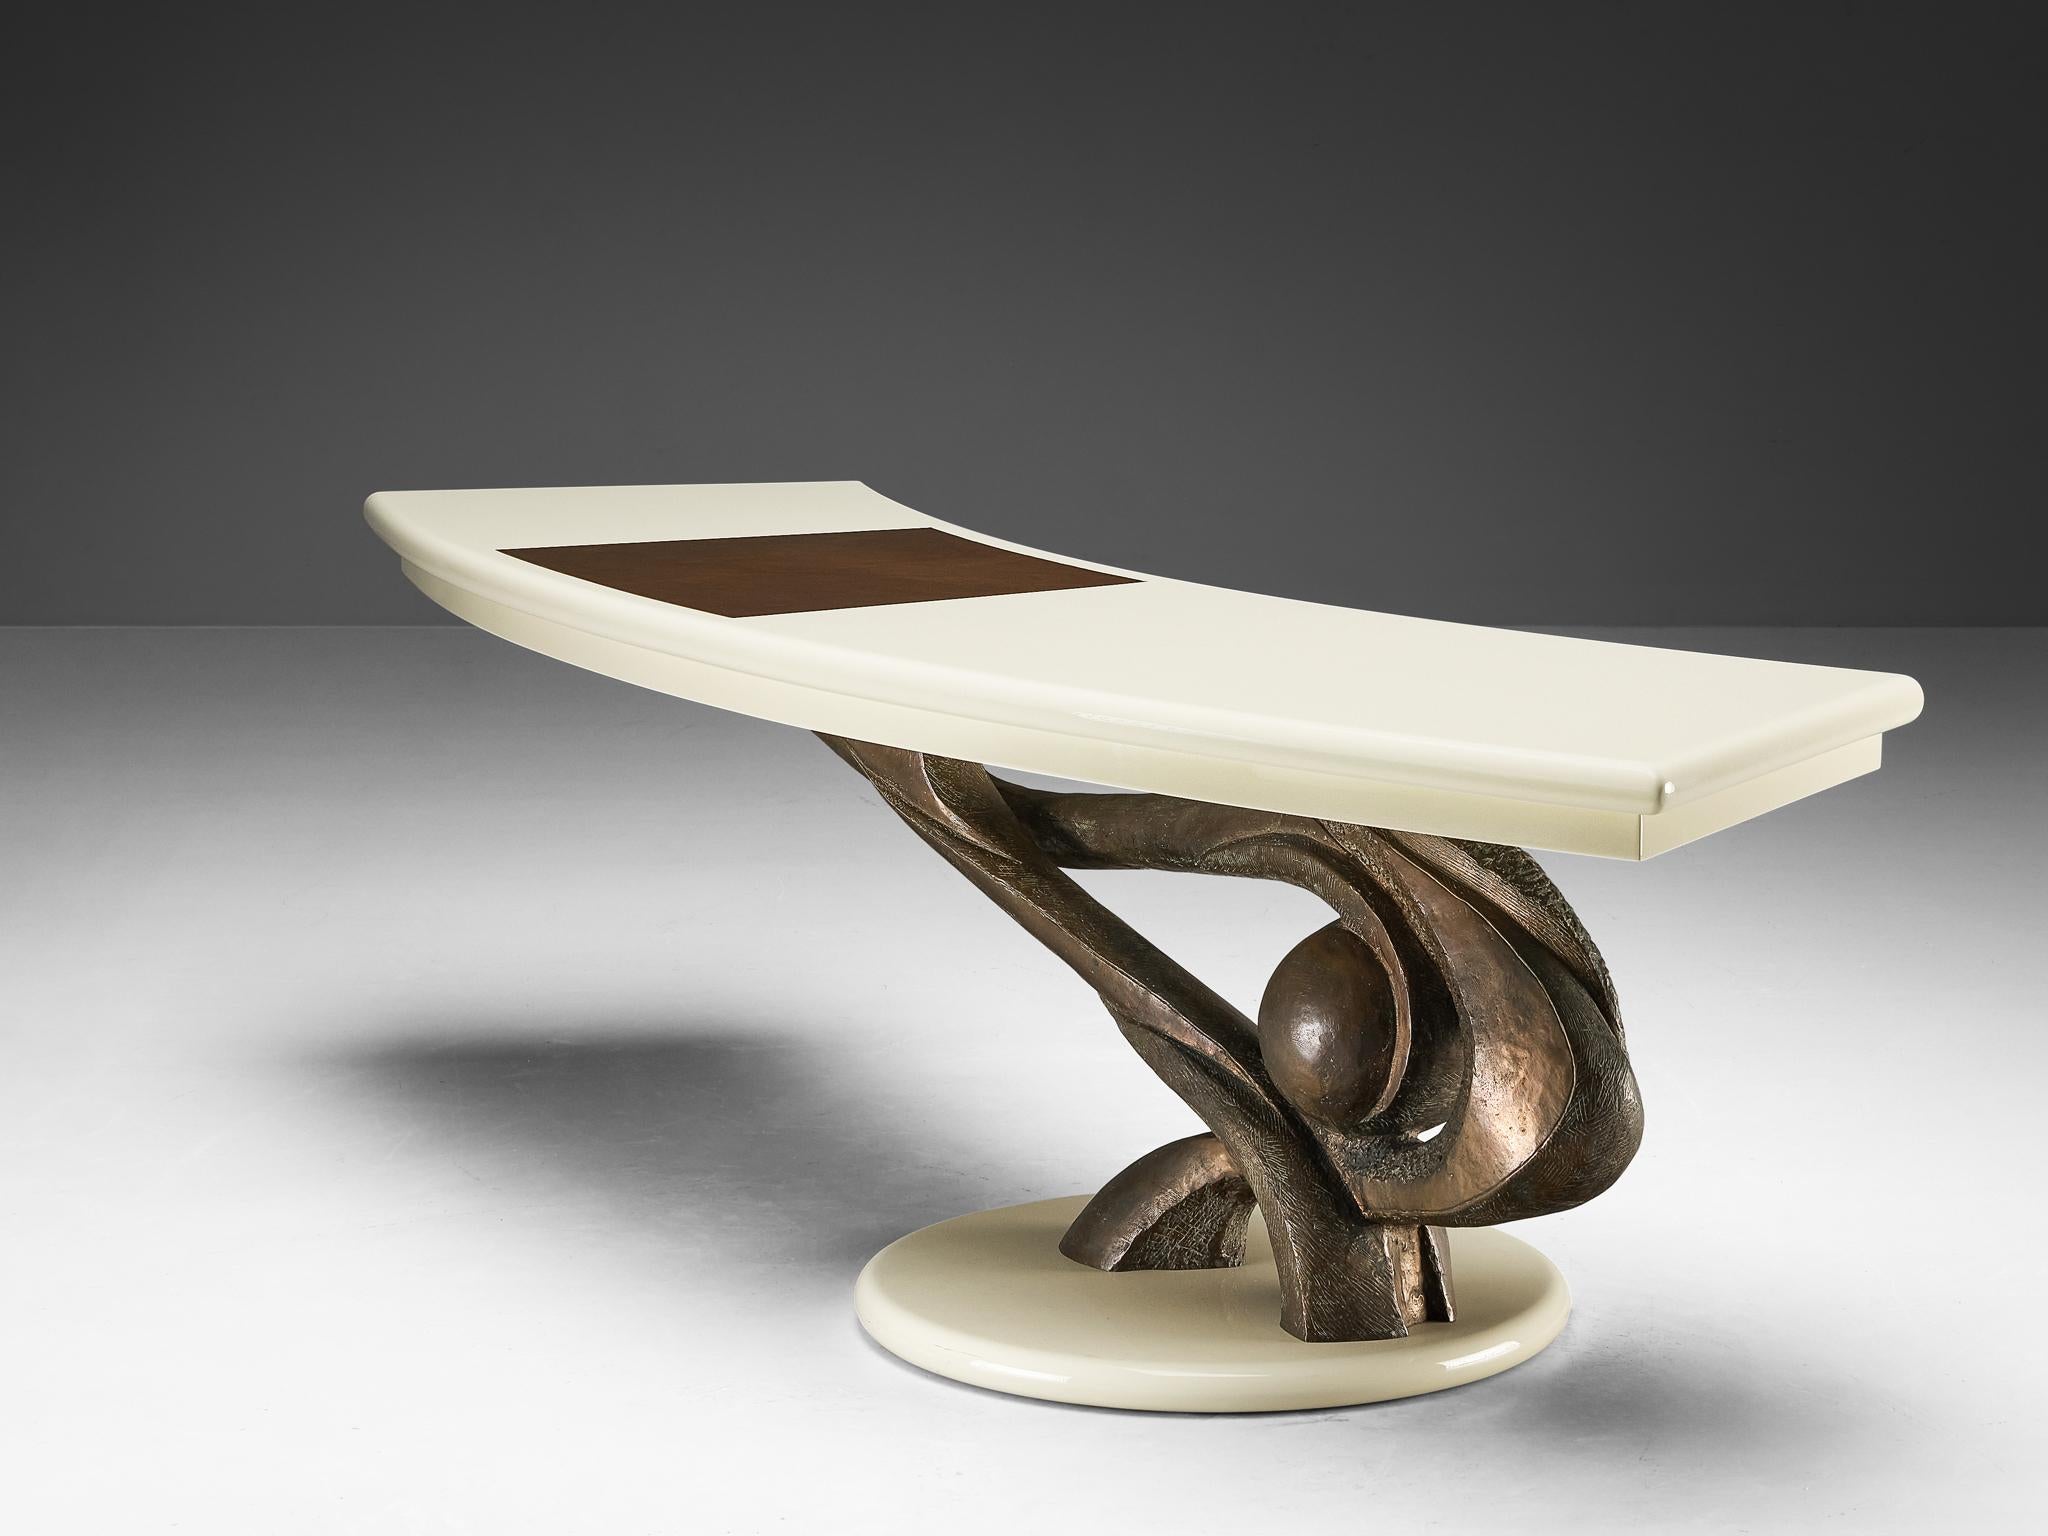 Marzio Cecchi, Schreibtisch, lackiertes Holz, lackiertes Eisen, Bronze, Leder, Italien, 1985
 
Der italienische Designer Marzio Cecchi (1940-1990) hat dieses bemerkenswerte Büro-Set entworfen, das eine wahre Augenweide ist. Der Bürotisch zeichnet